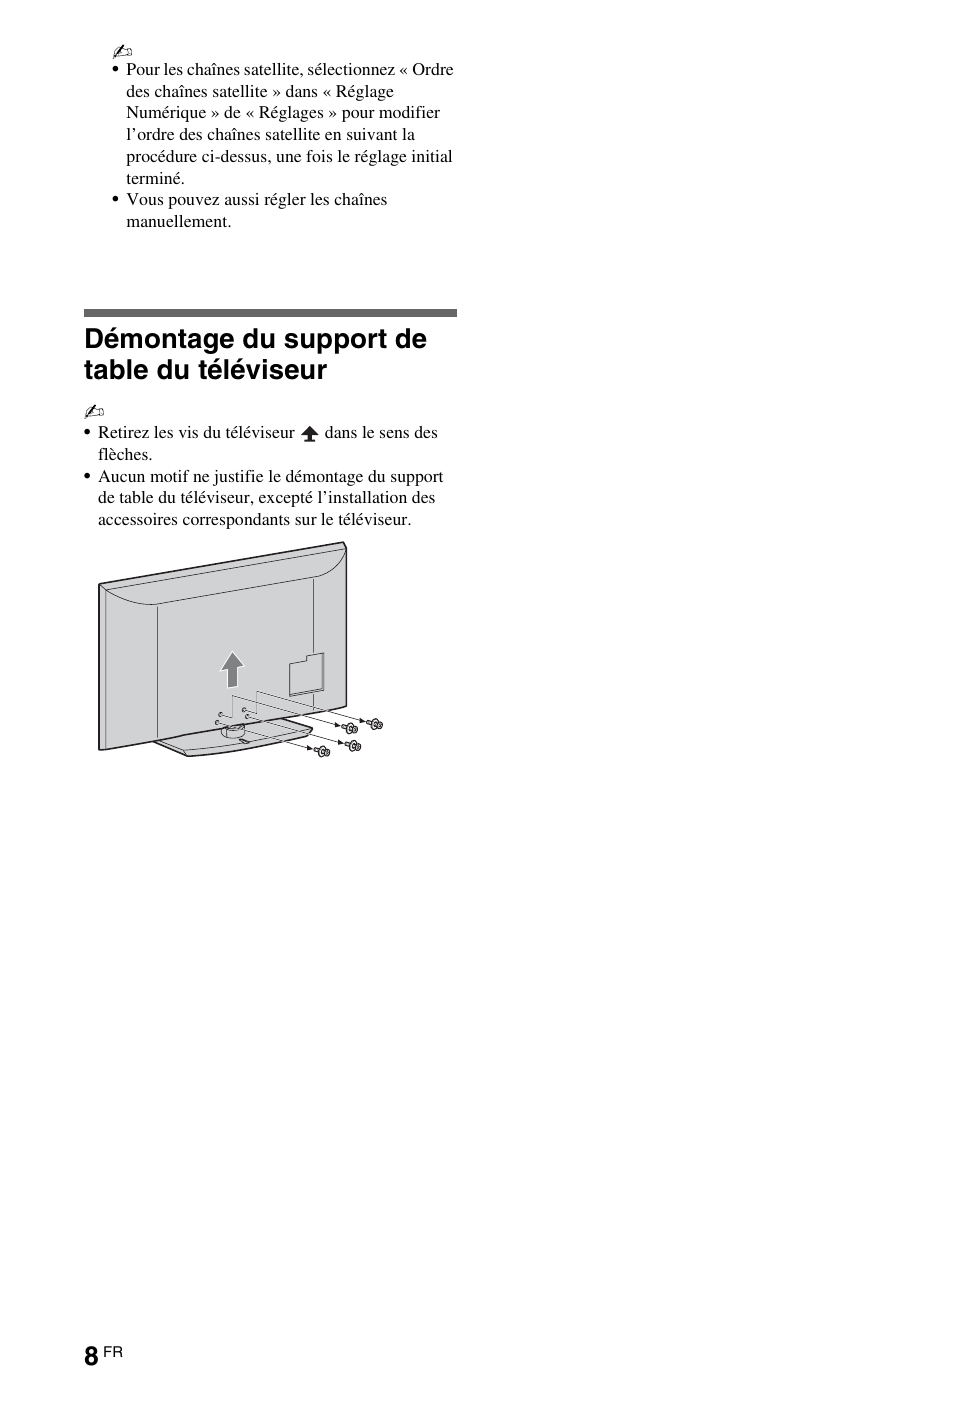 Démontage du support de table du téléviseur | Инструкция по эксплуатации Sony KDL-32EX508 | Страница 8 / 218